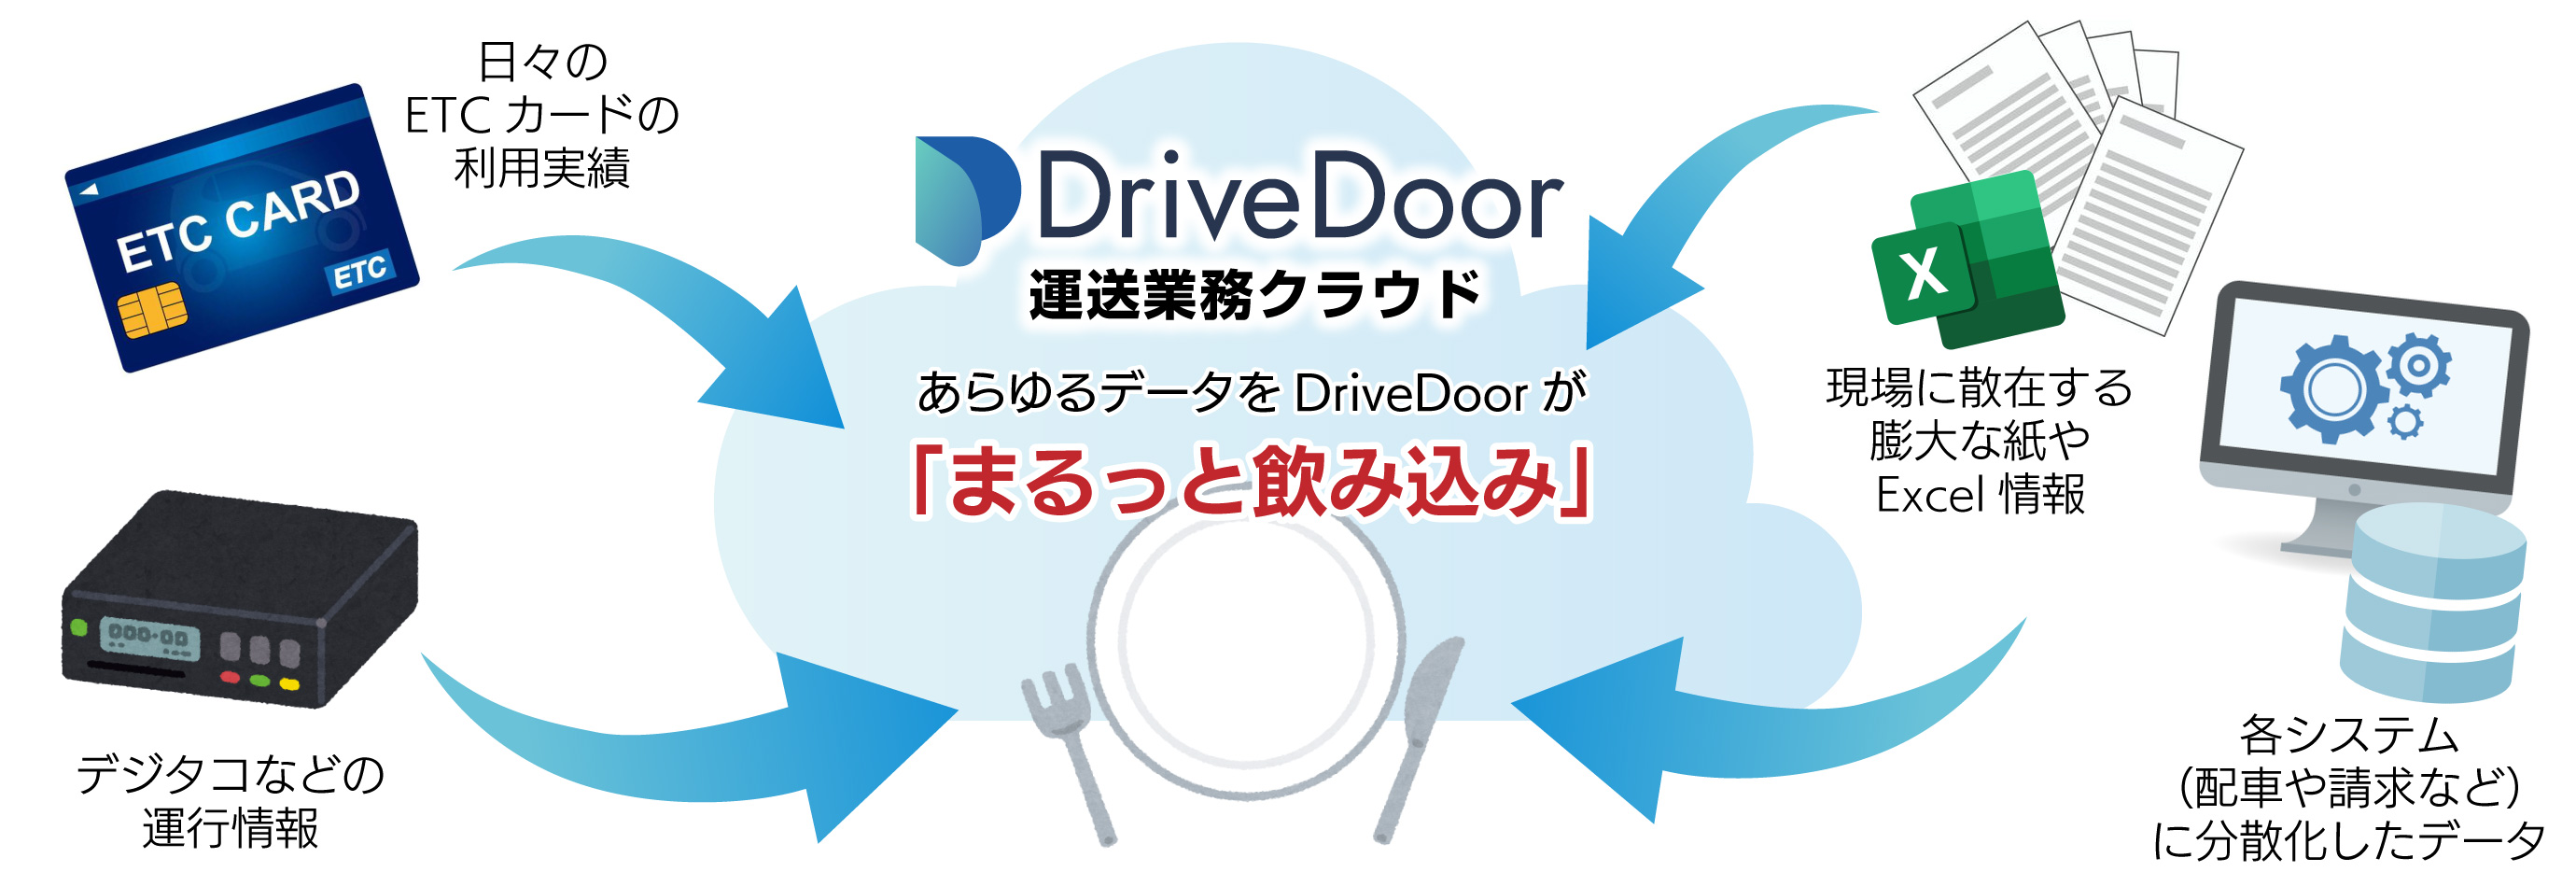 DriveDoor運送業務クラウド PC